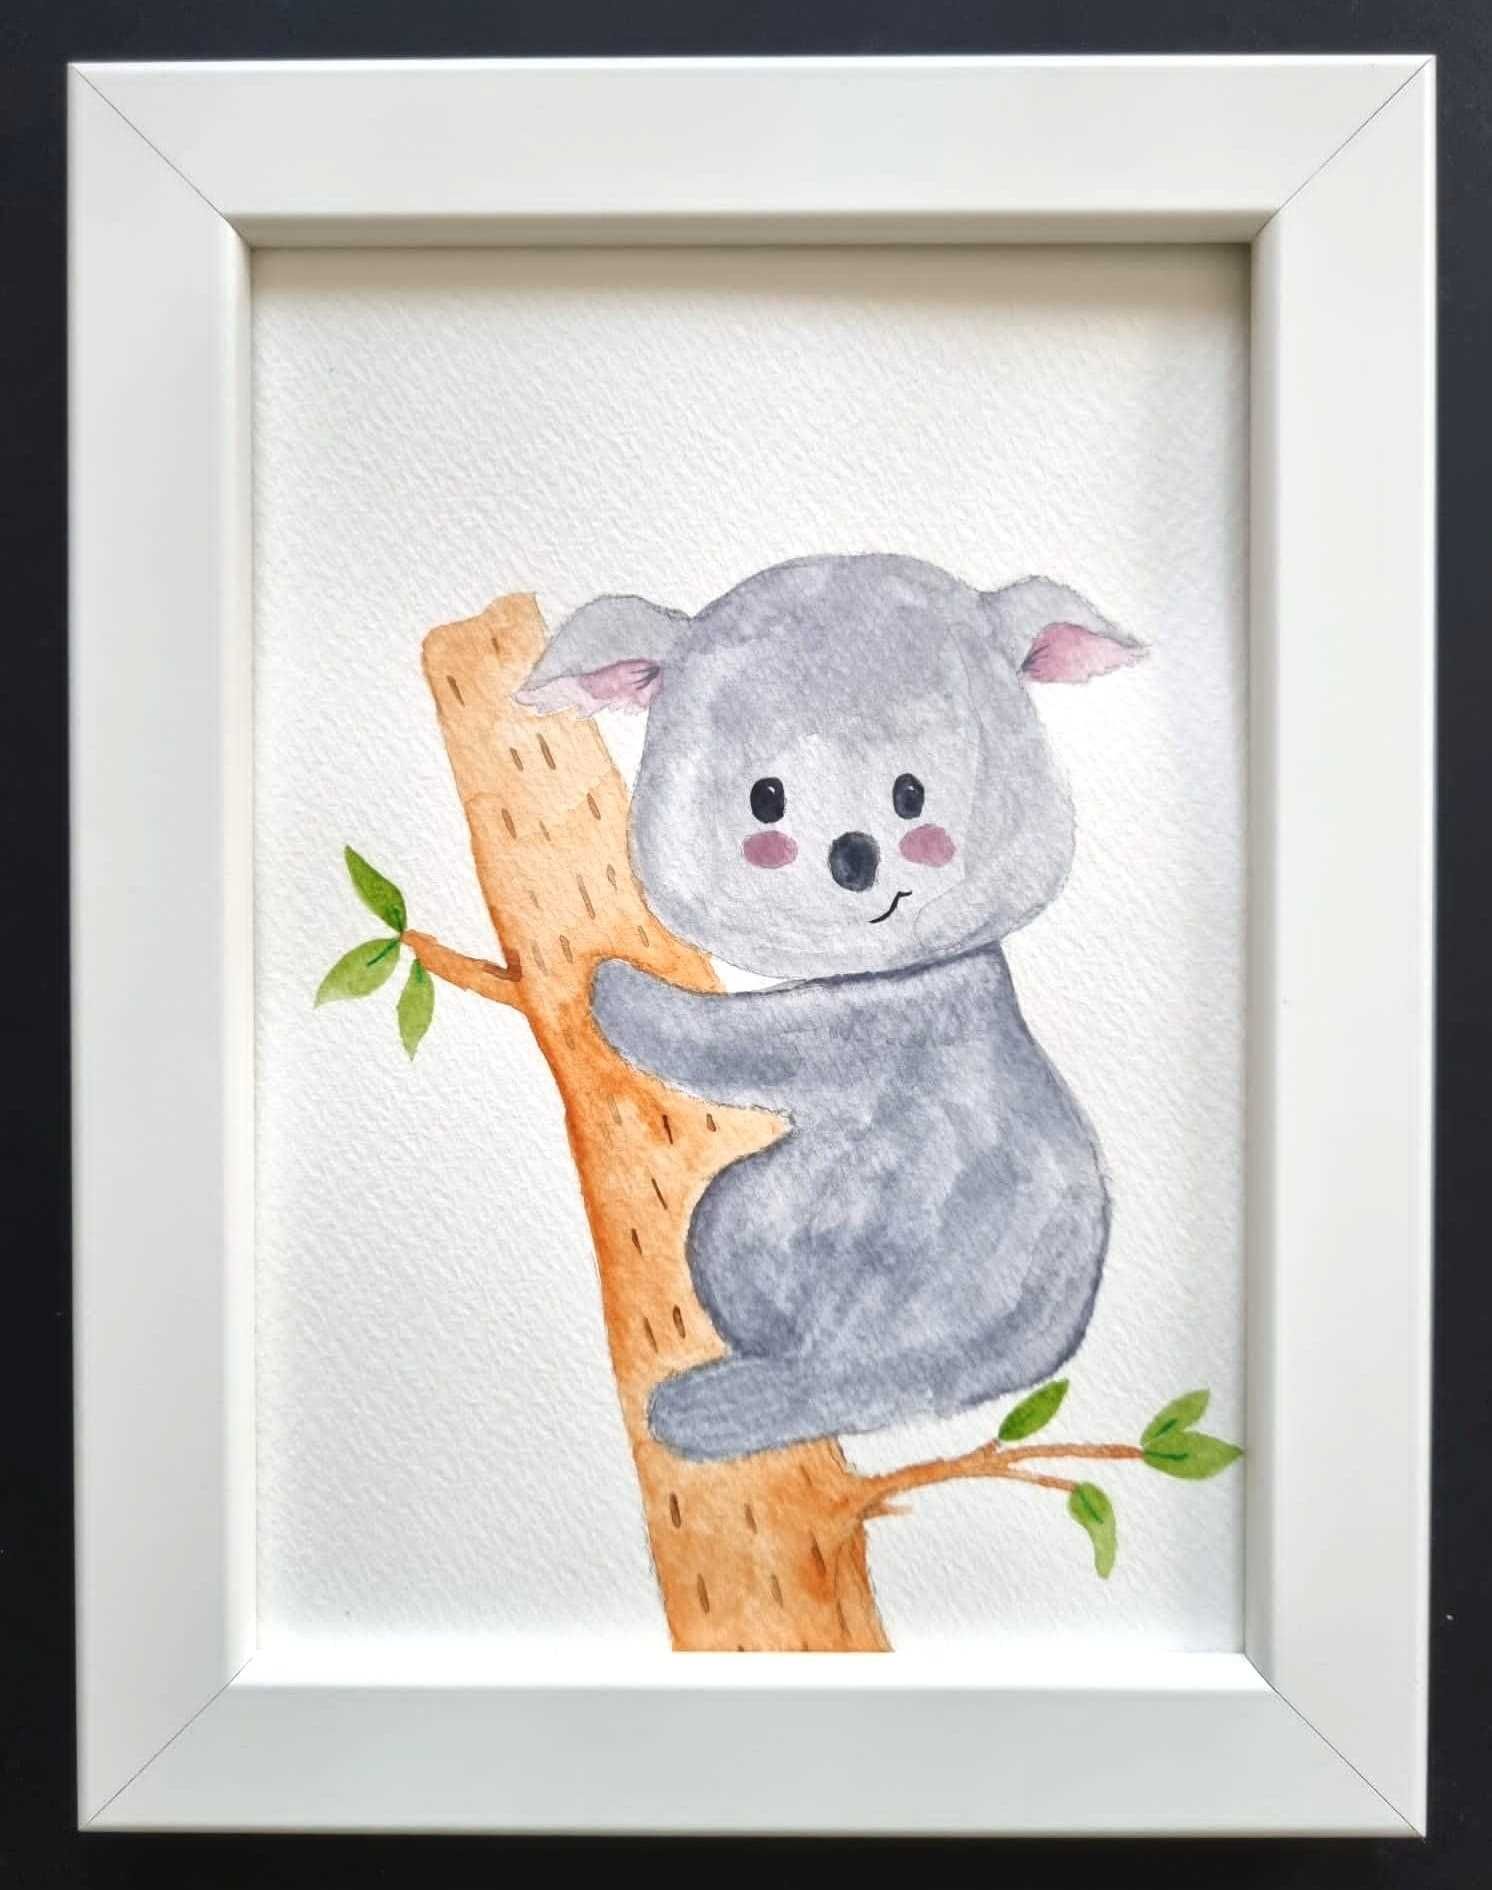 Quadro infantil para decoração com design coala (moldura incluída)